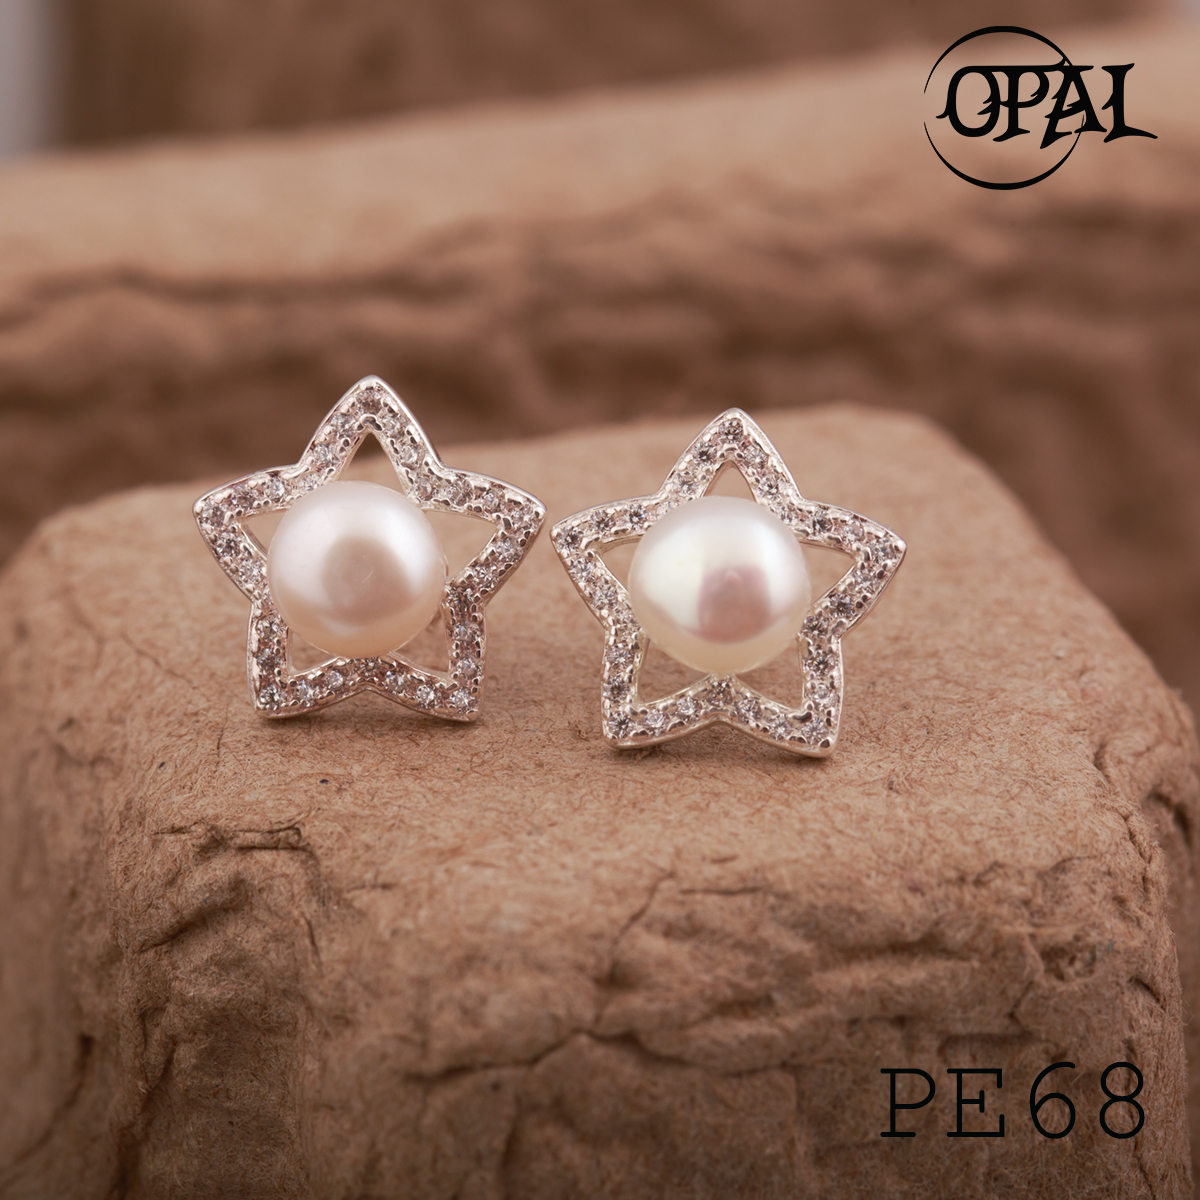  PE68 - Hoa tai bạc đính ngọc trai OPAL 